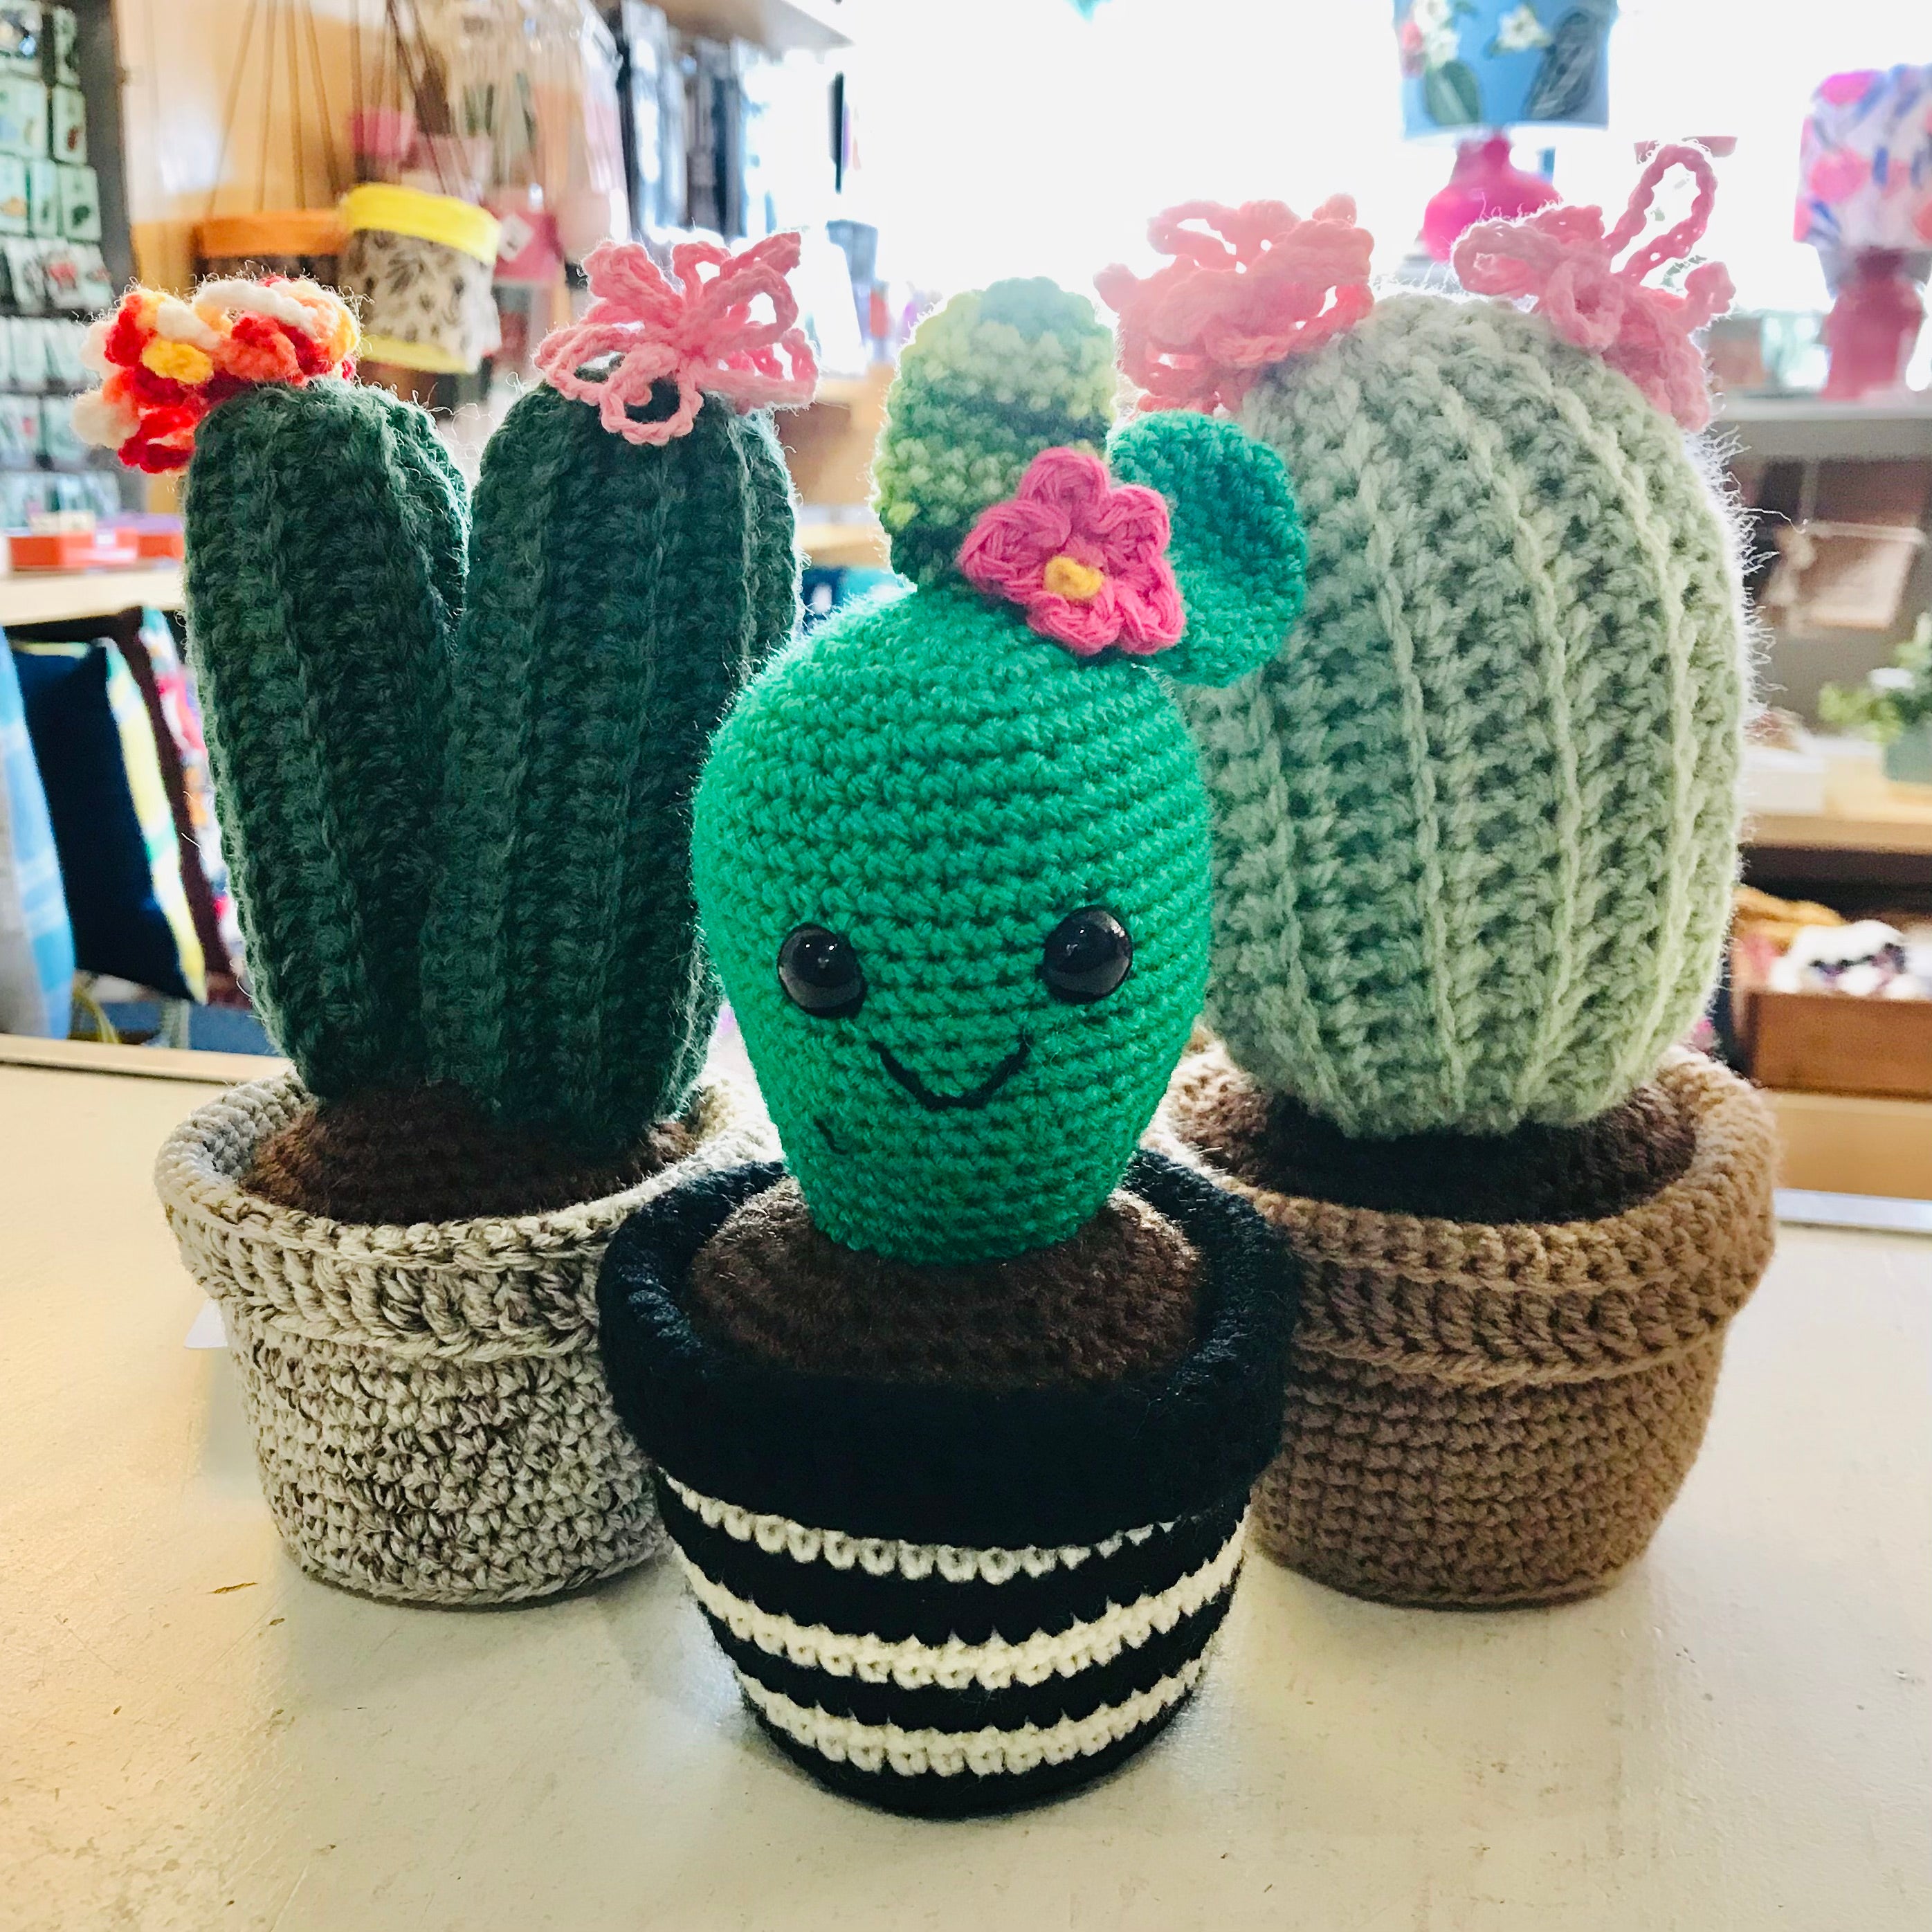 Crochet Potted Succulent Cacti Plants